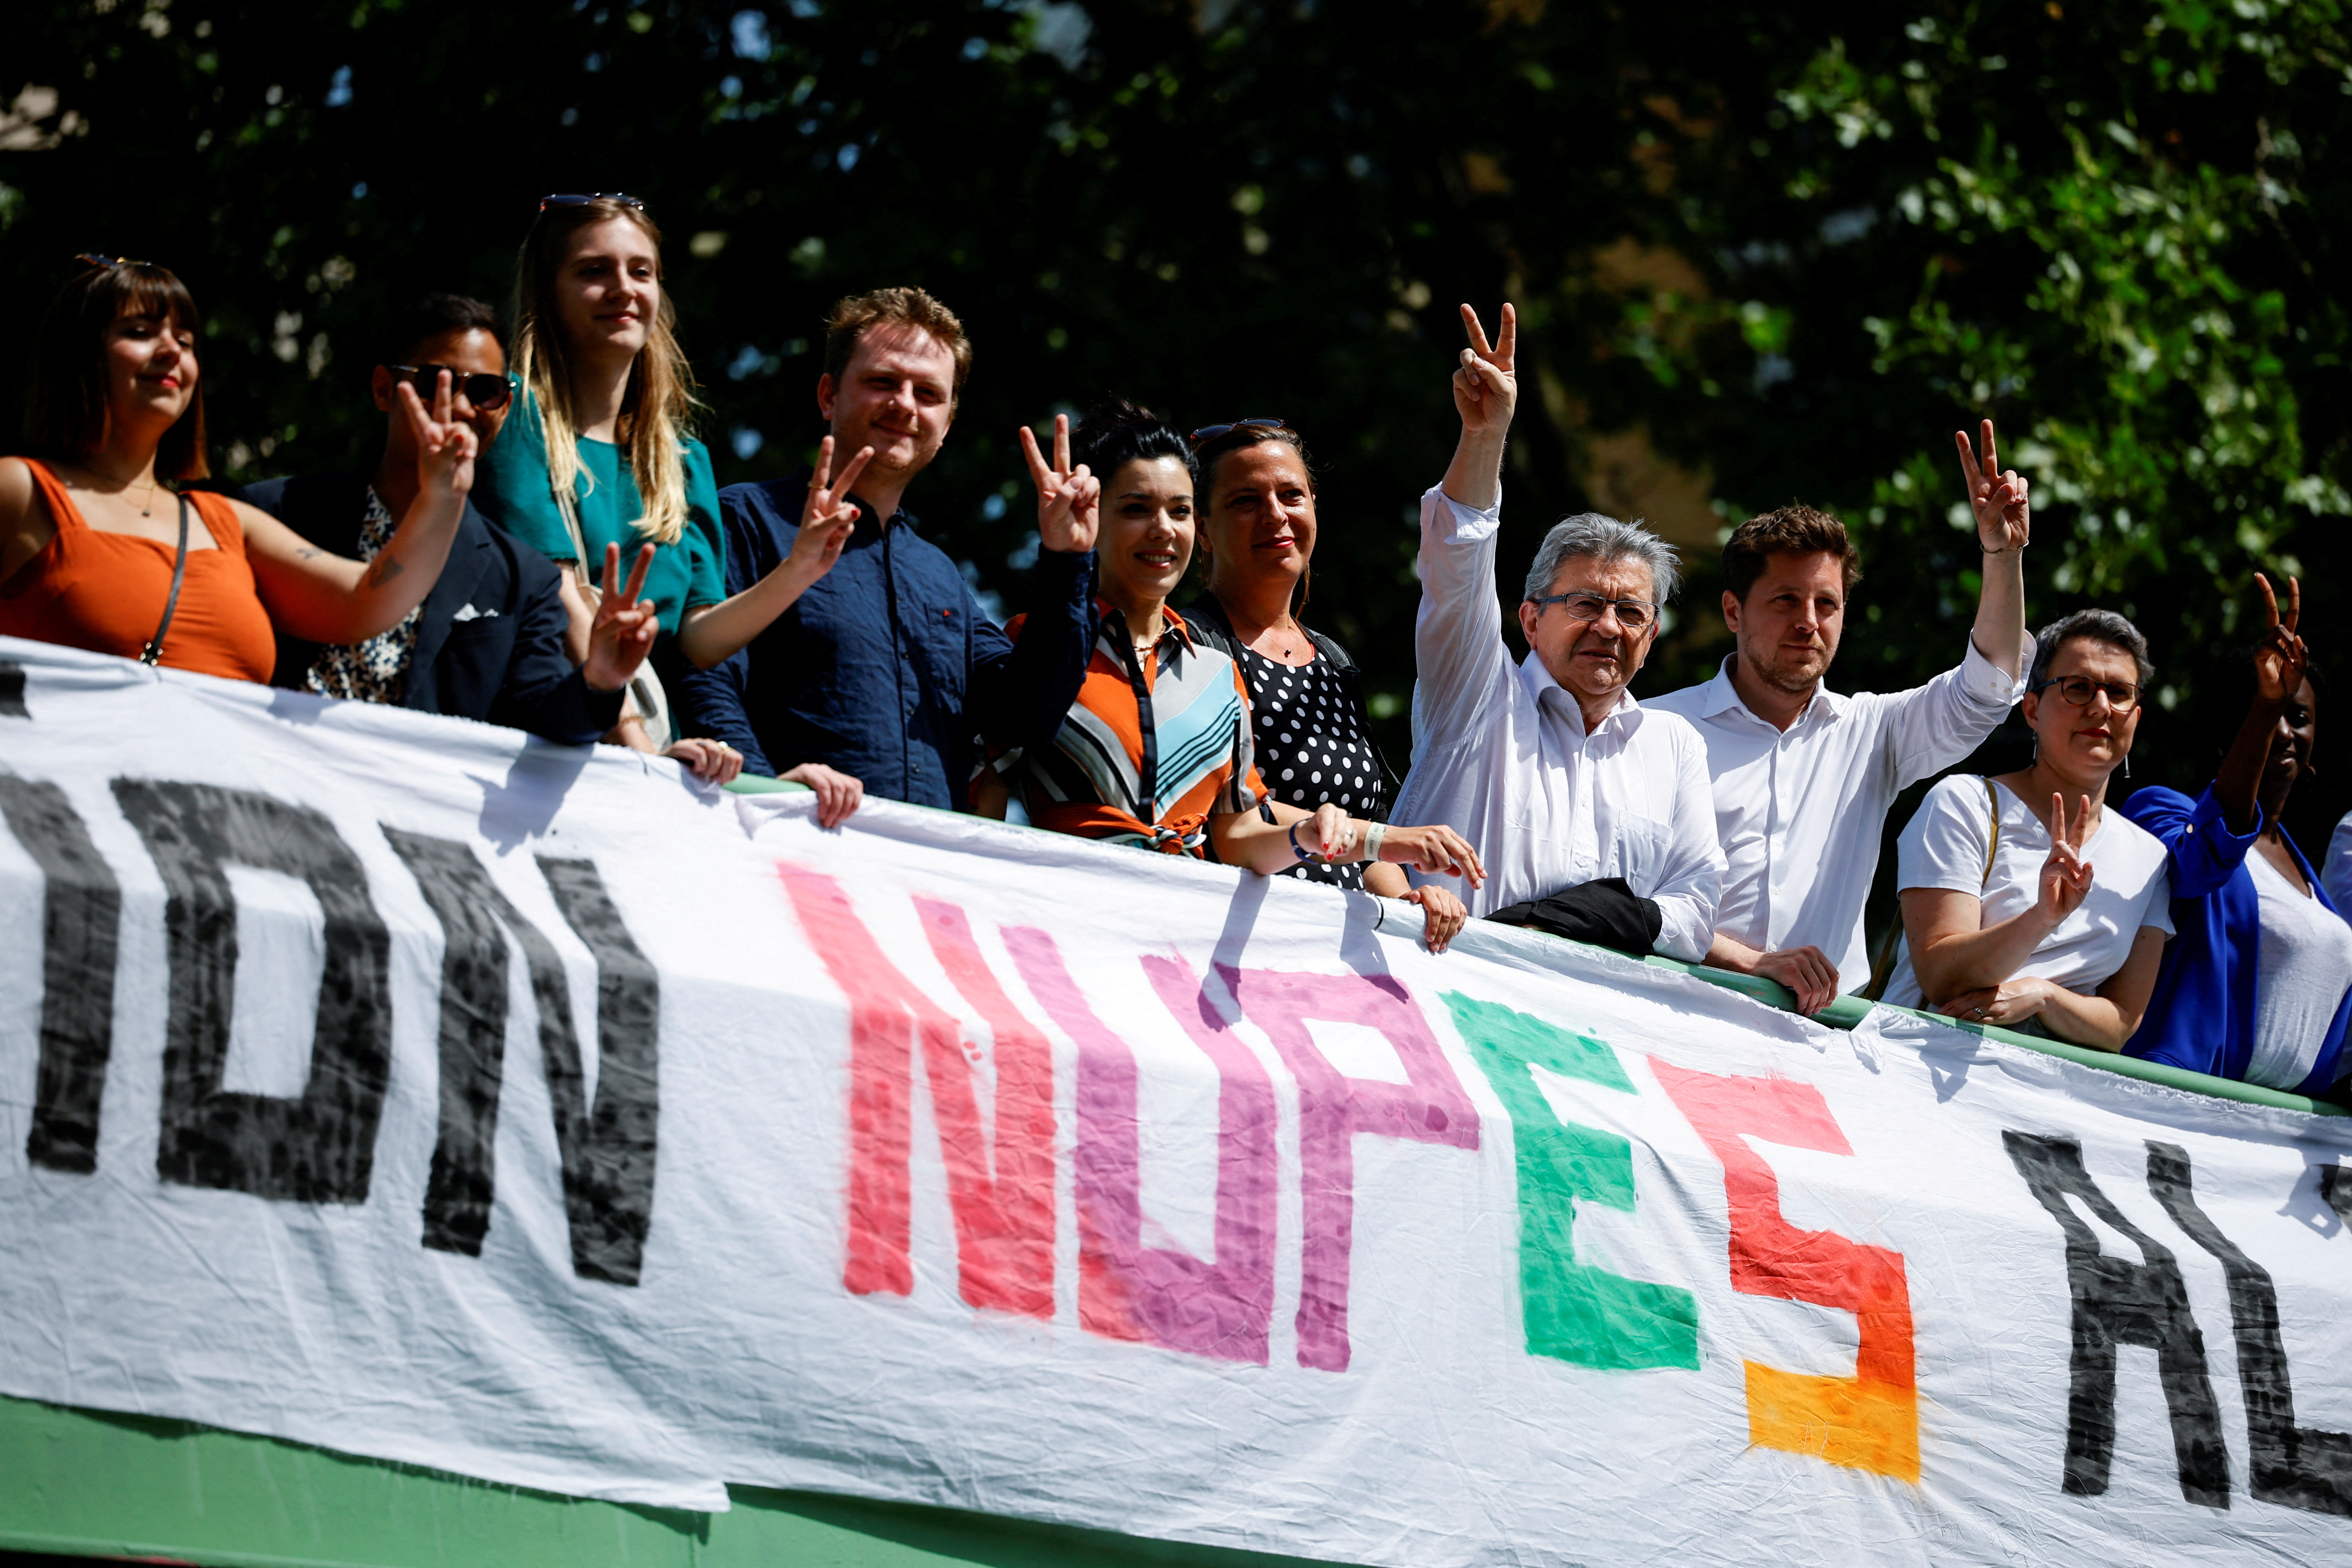 Foto de archivo: Miembros de la coalición de izquierdas Nueva Unión Popular Ecológica y Social (NUPES)  (REUTERS/Sarah Meyssonnier)